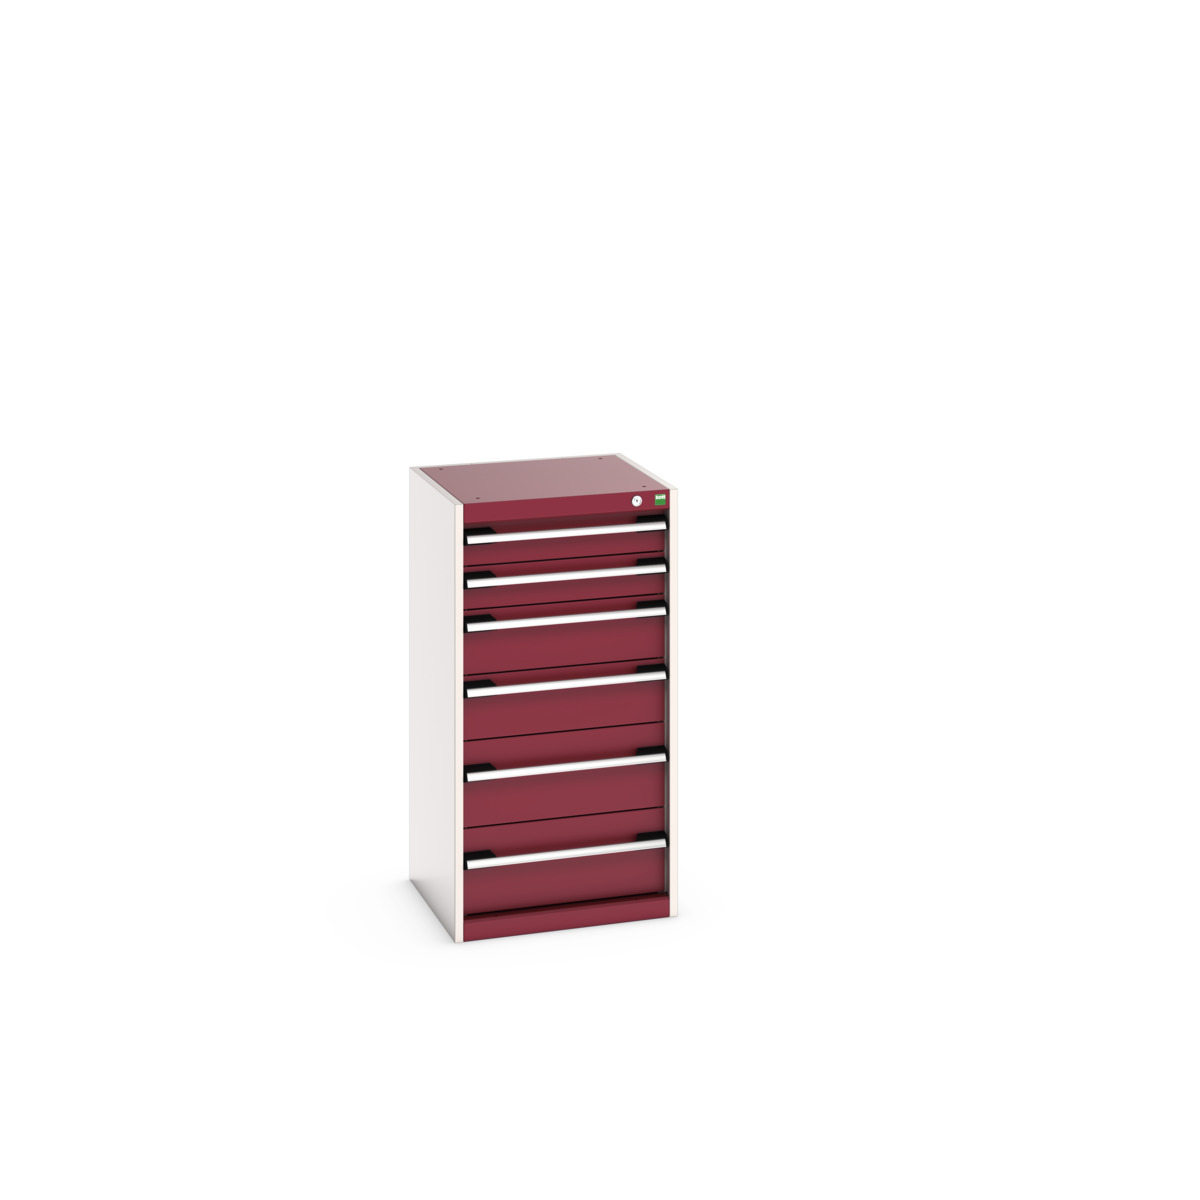 40010047.24V - cubio drawer cabinet